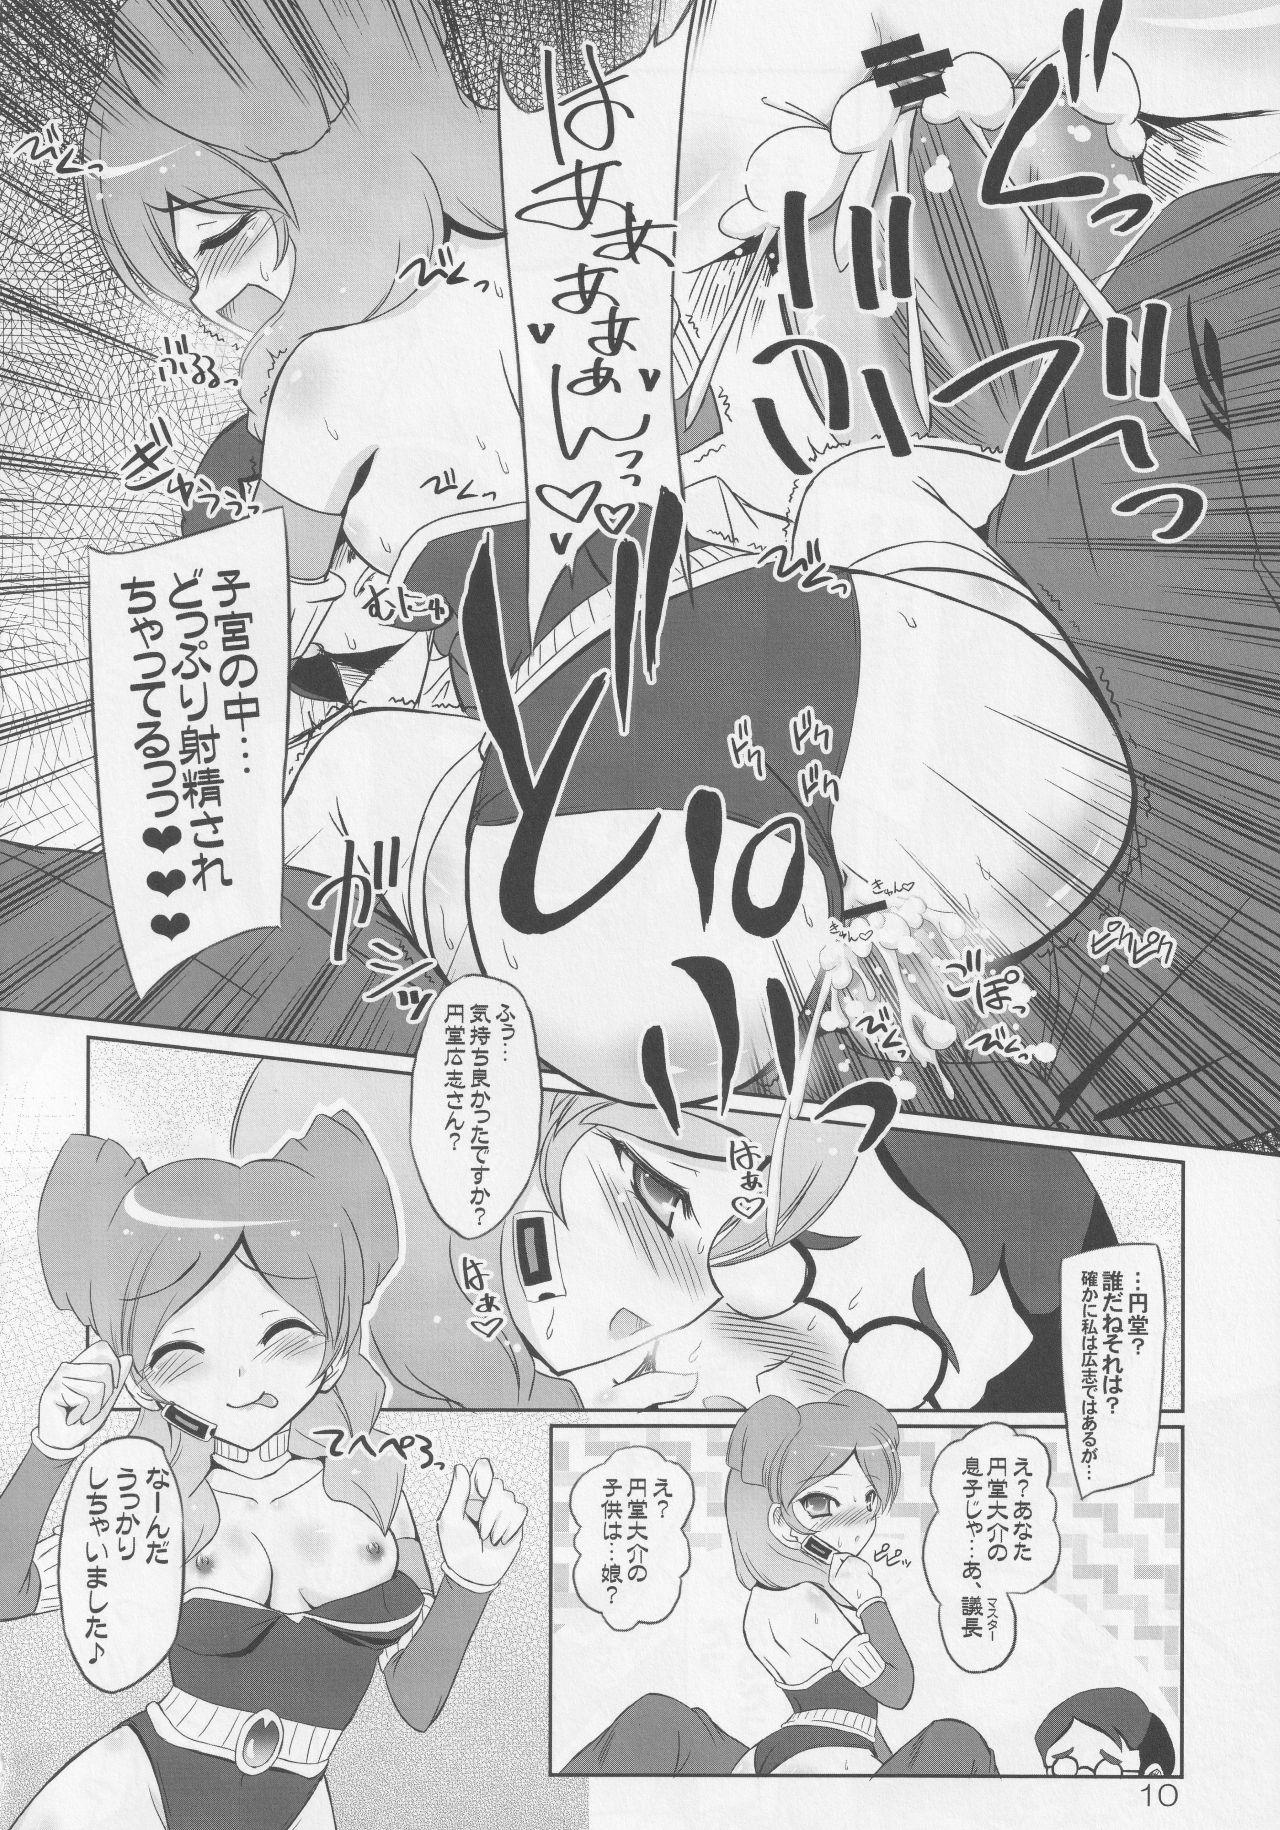 Rubbing Protocol Omeko - Inazuma eleven go 3some - Page 9